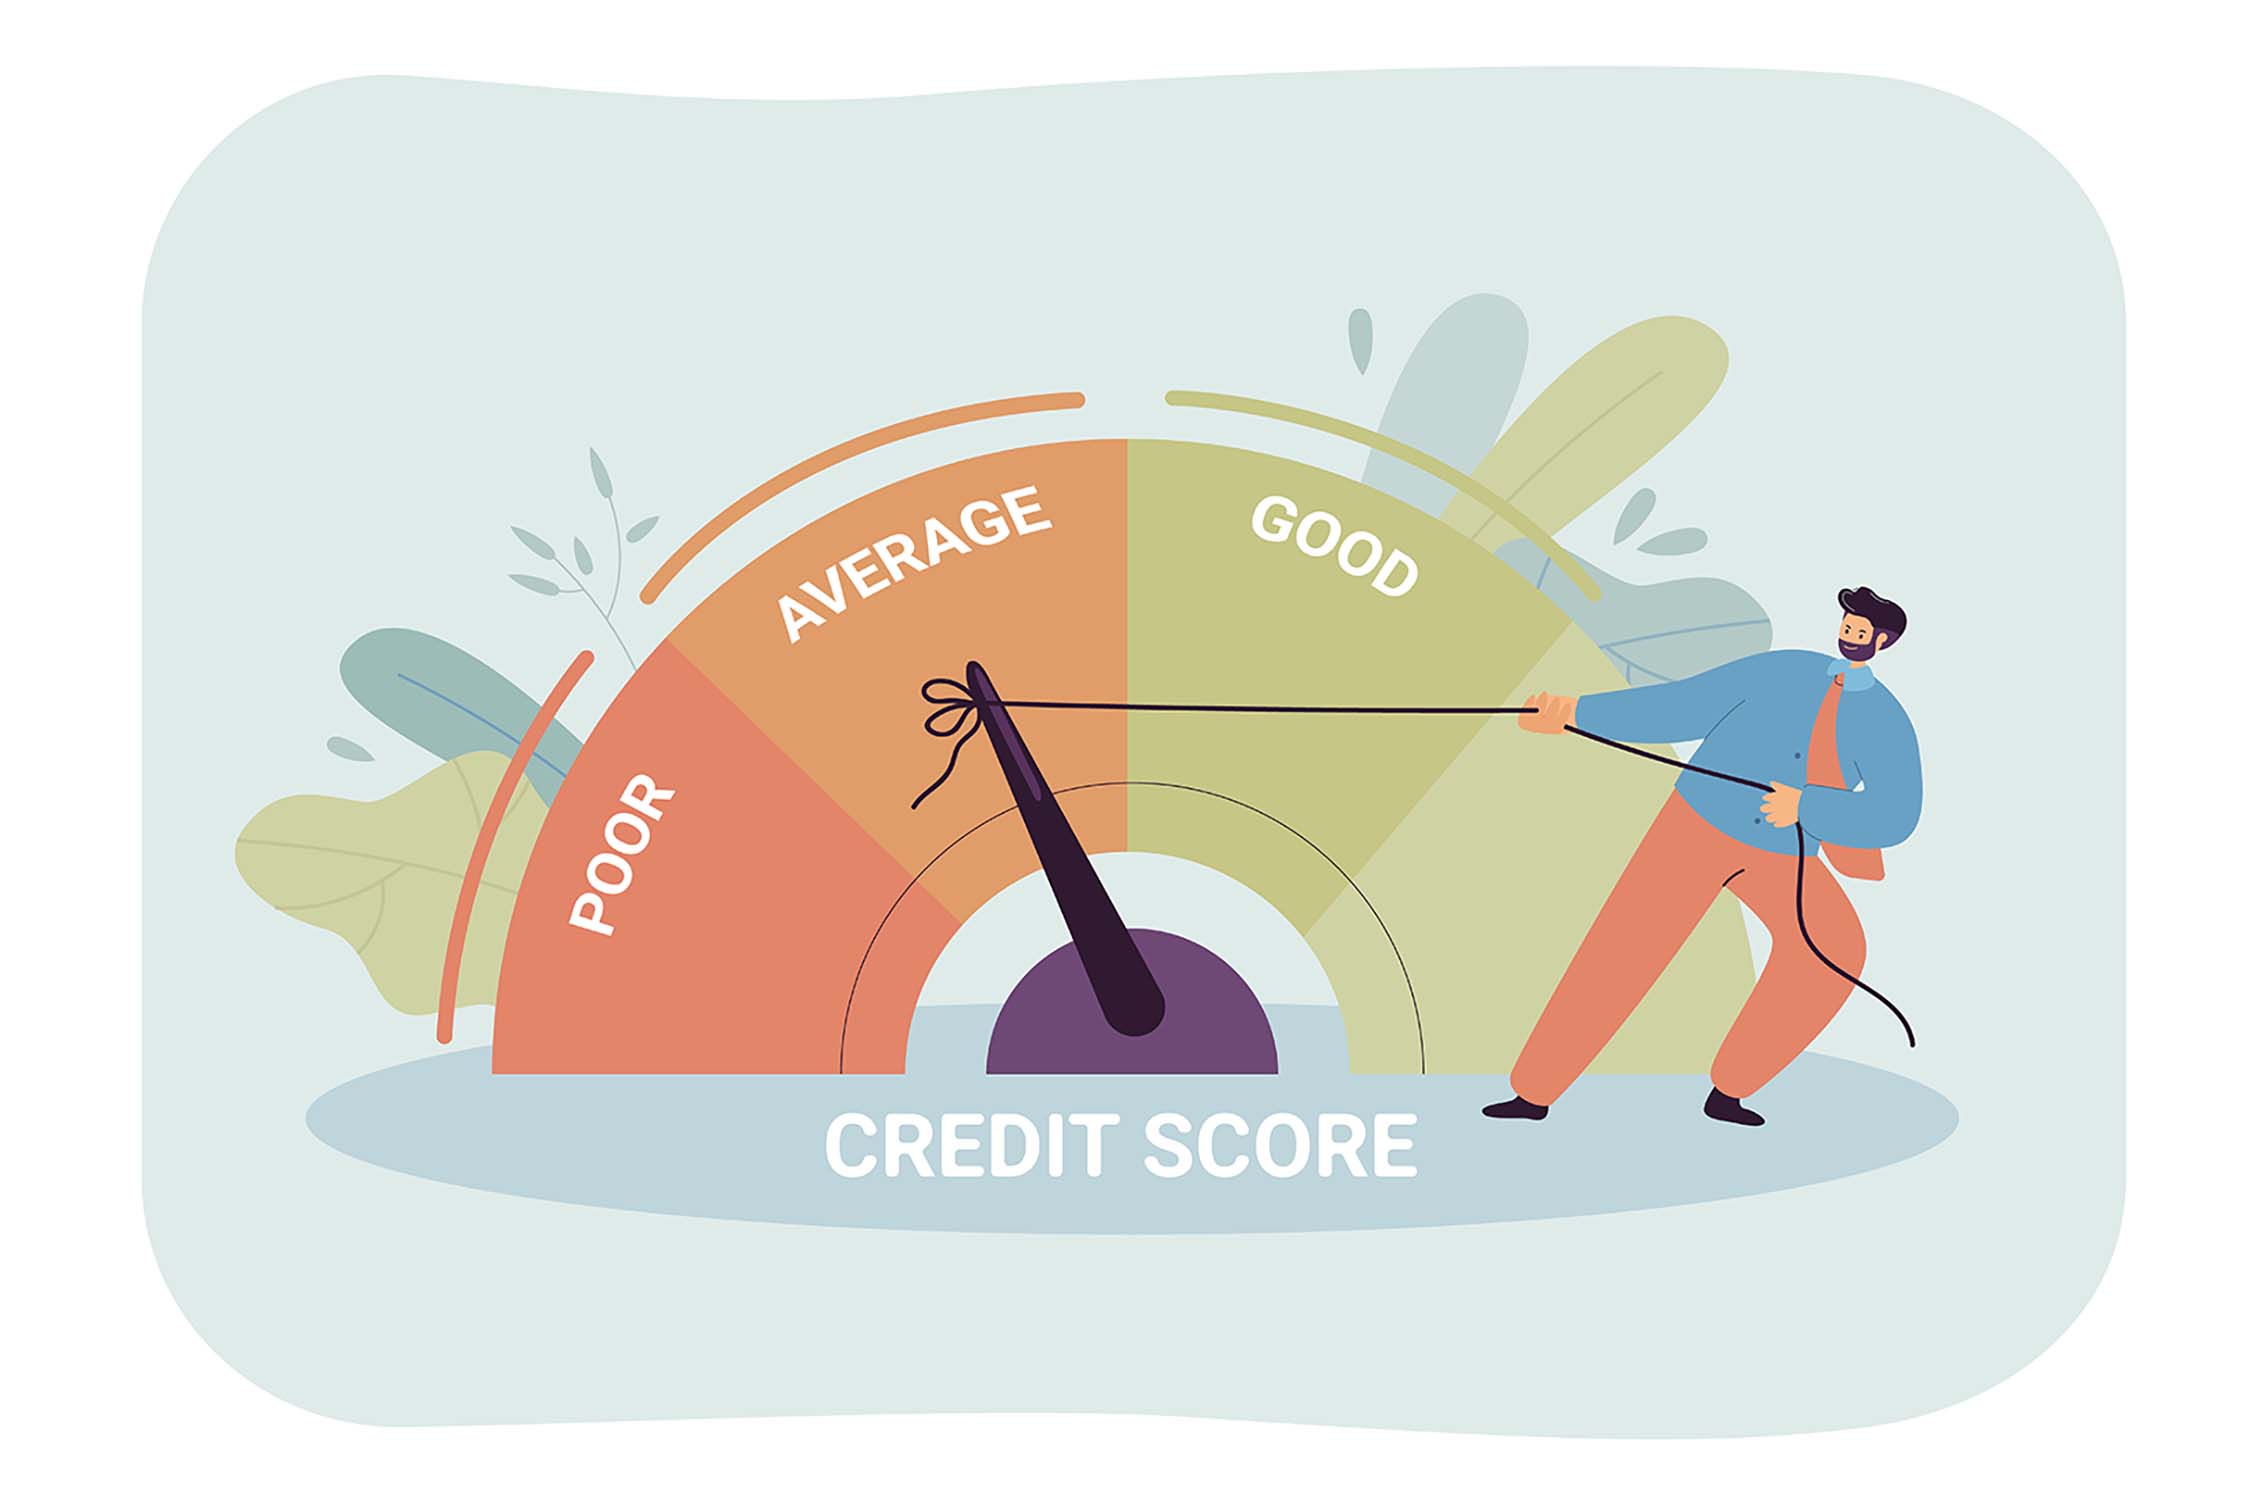 क्रेडिट रेटिंग (Credit Rating) म्हणजे काय? समजून घ्या त्याचे महत्त्व आणि कार्य Credit Rating Meaning & Functions